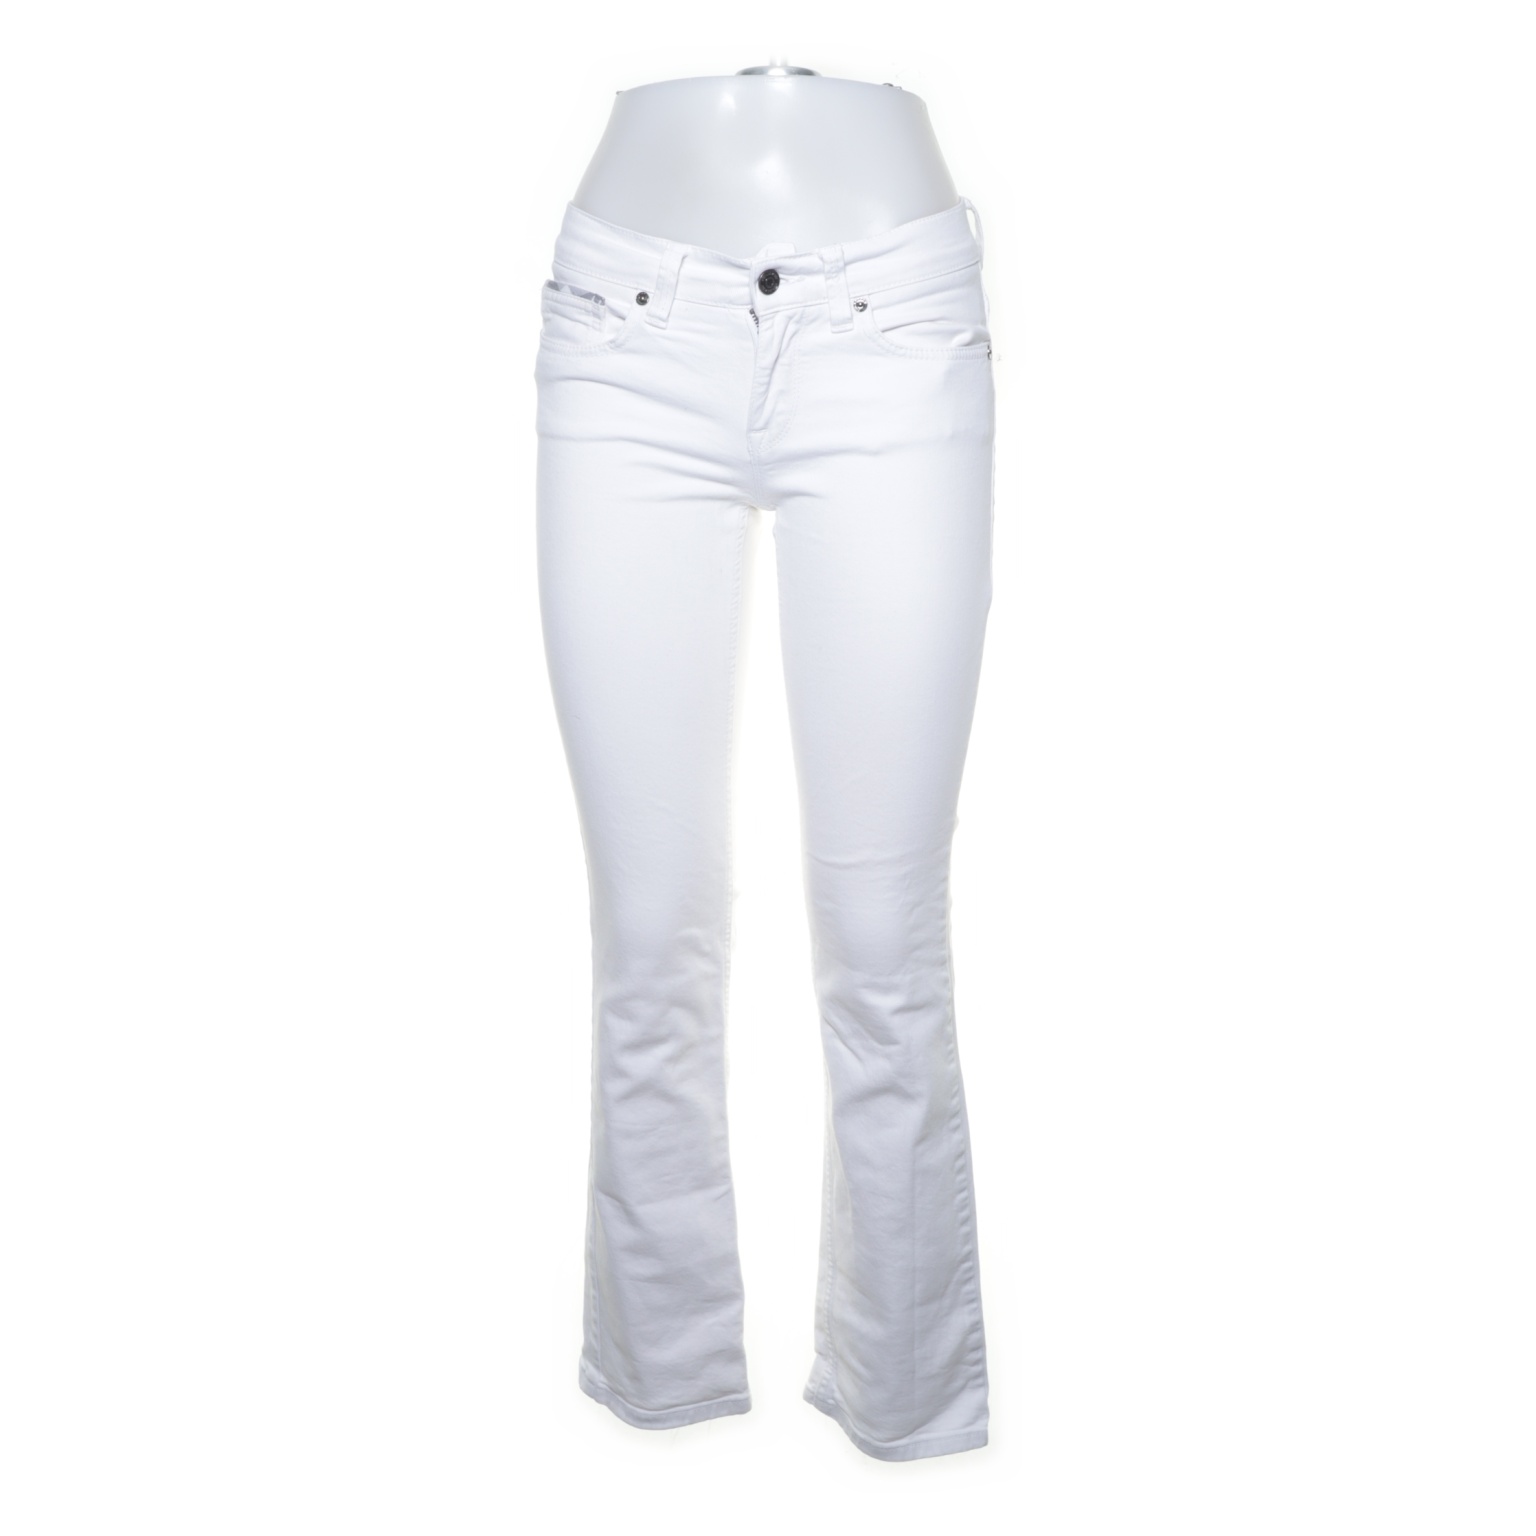 Burberry - Jeans - Größe: 27 - Weiß von Burberry